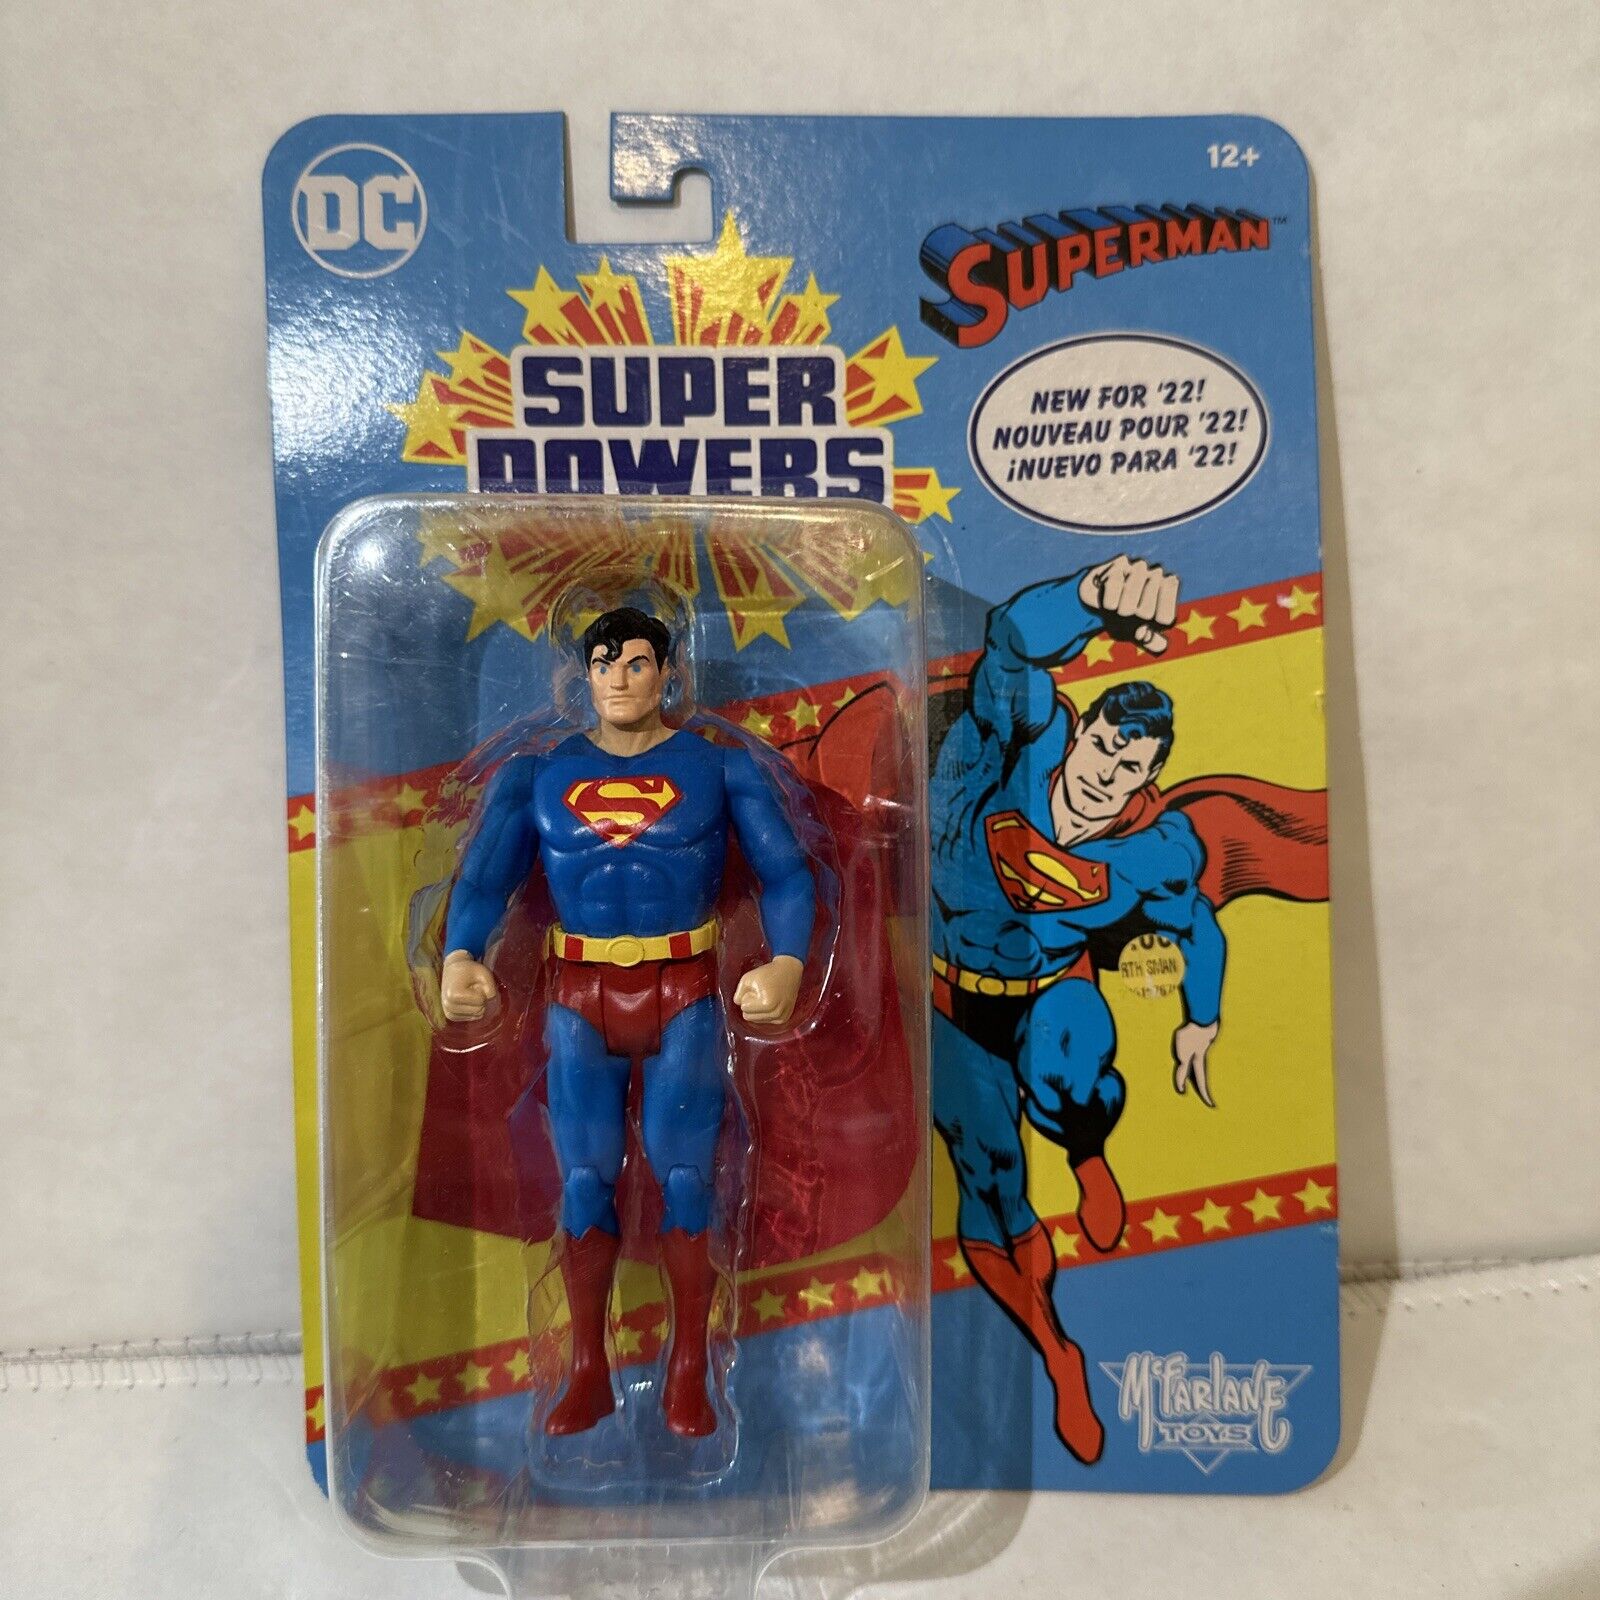 Retro Superman McFarlane Toys DC Super Powers Superman Action Figure 2022